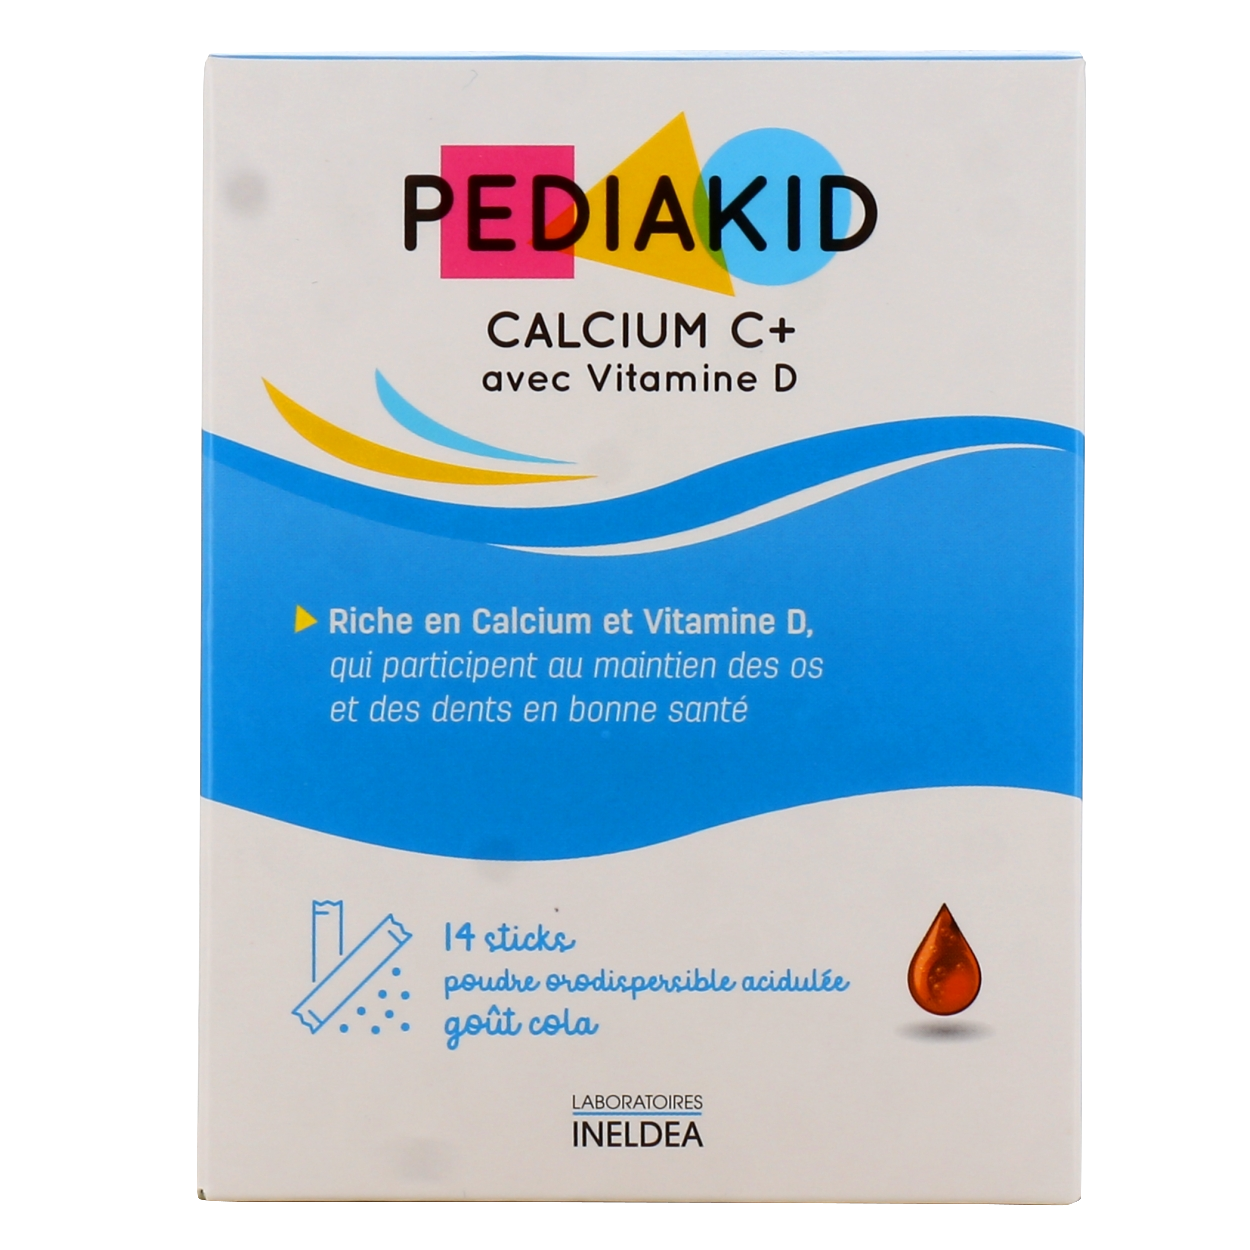 Pediakid Calcium C+ 14 sticks